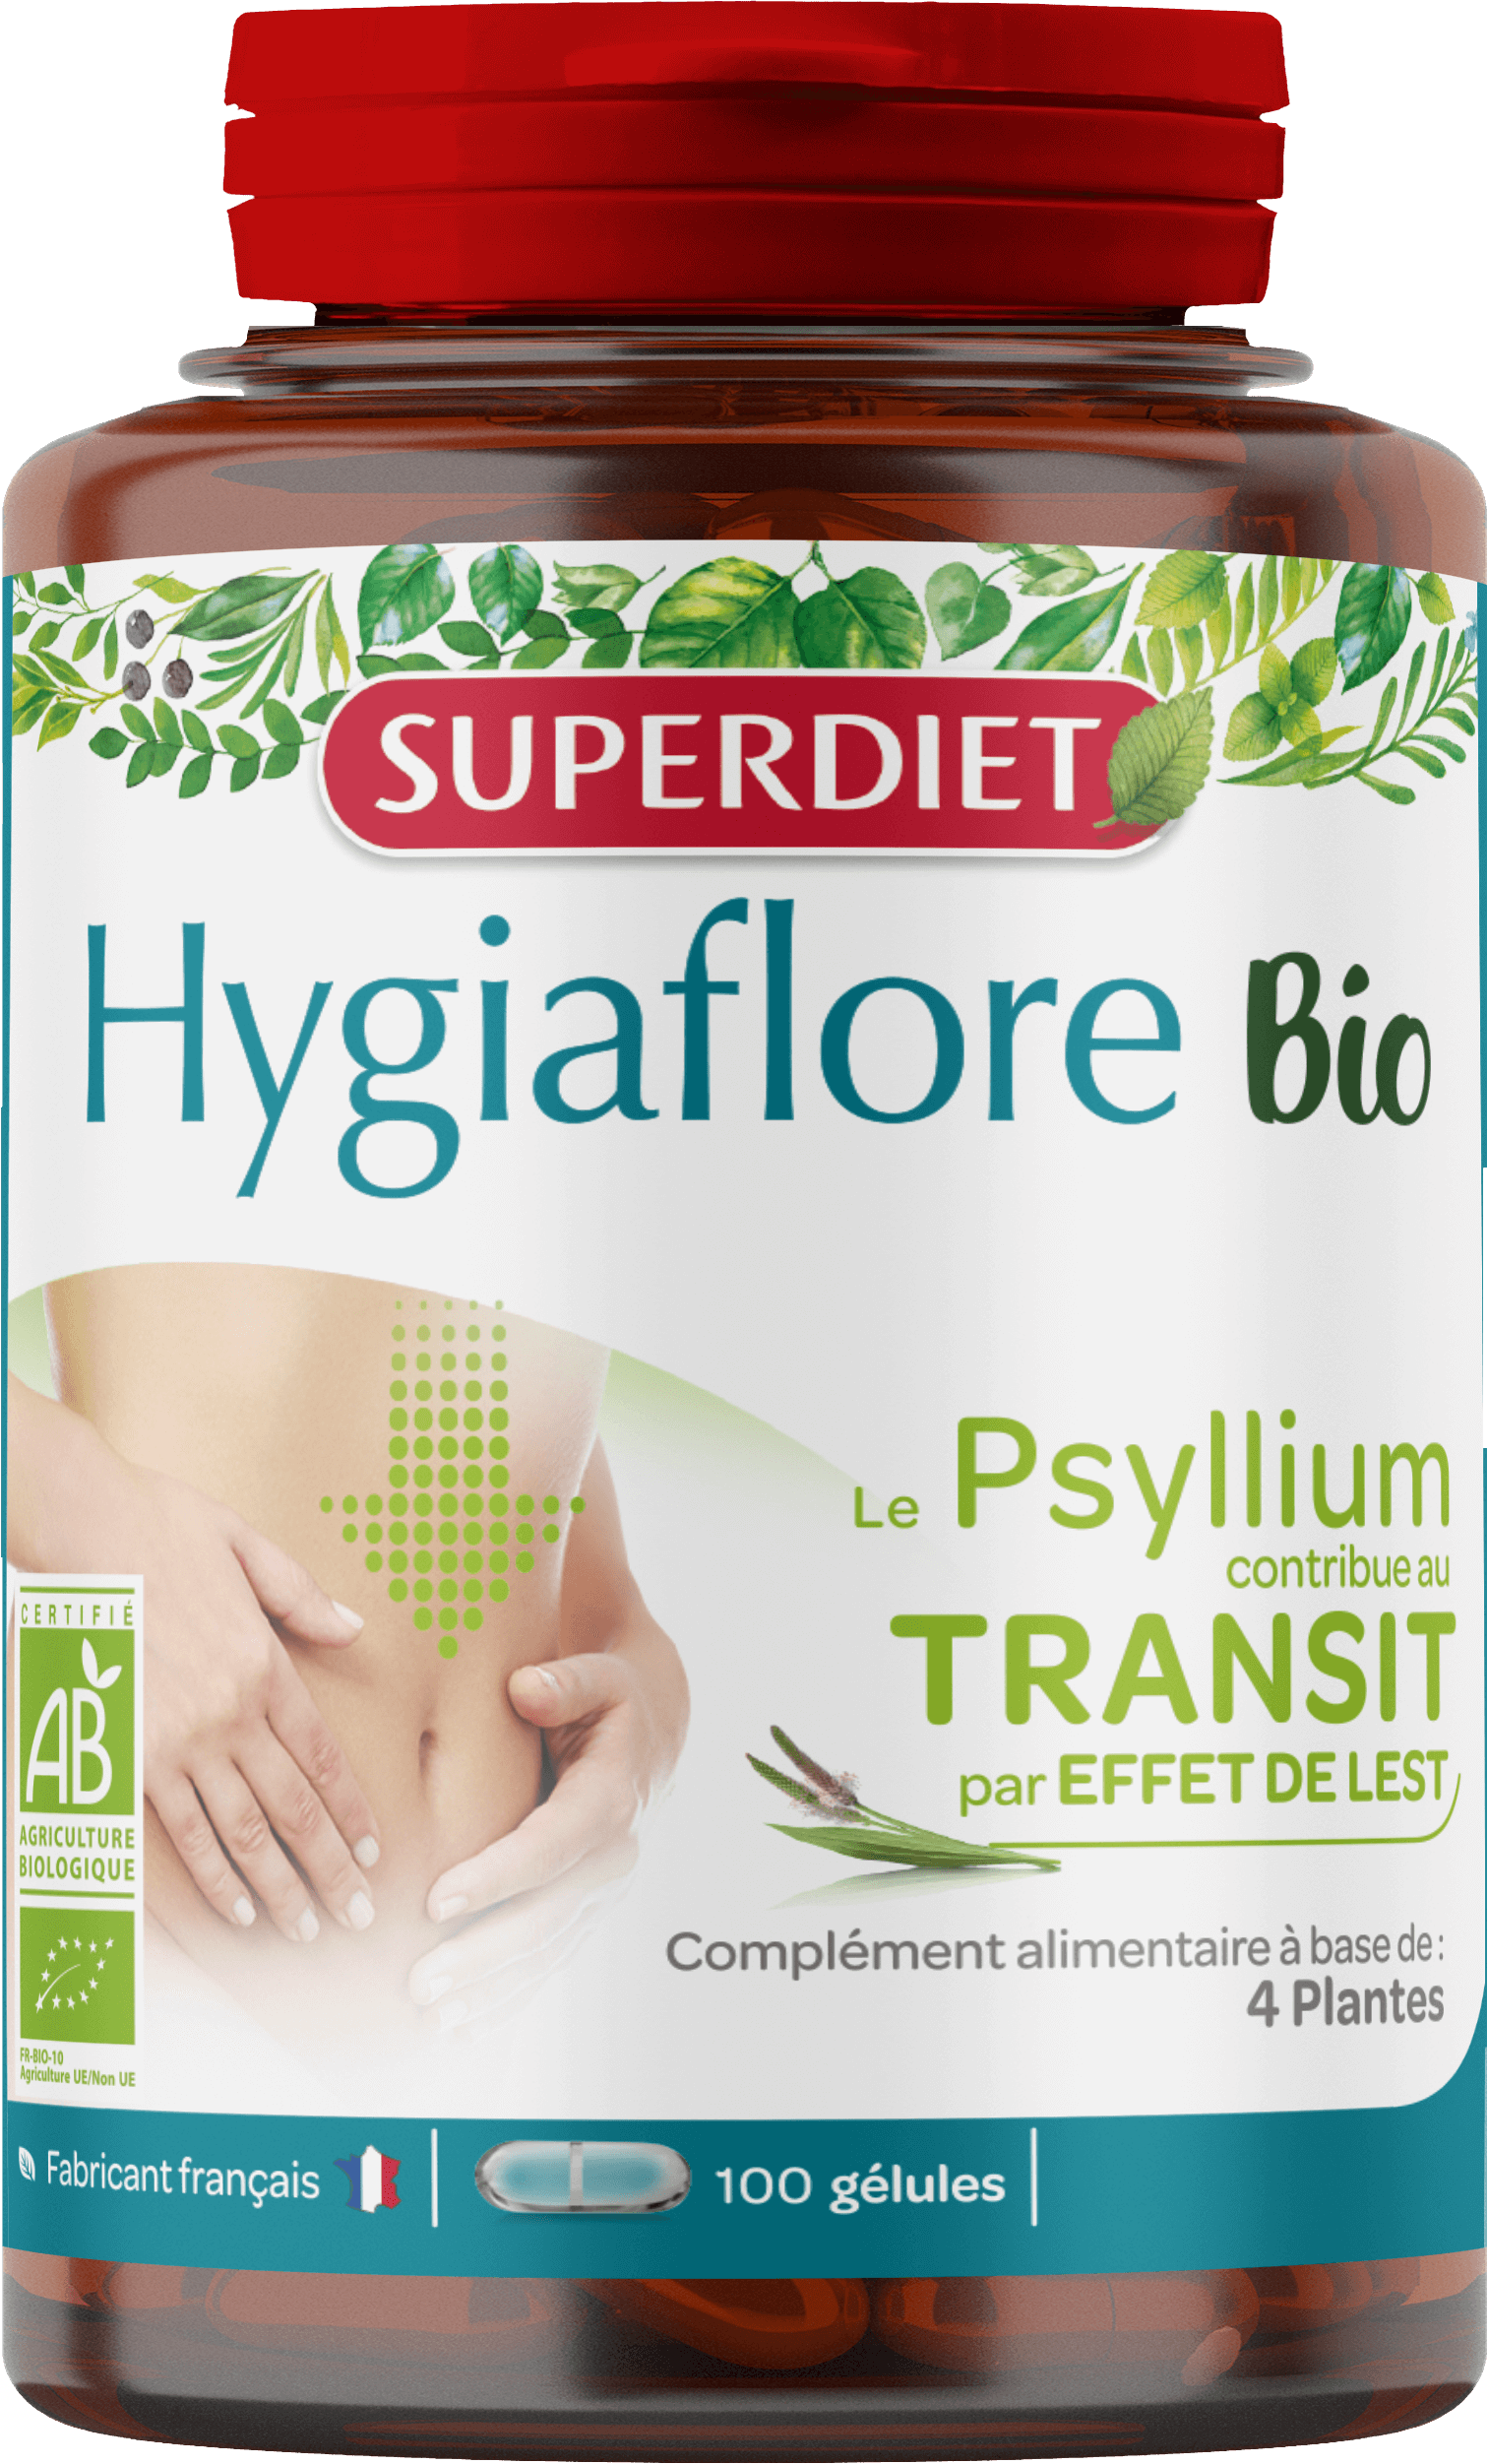 Super Diet Hygiaflore psyllium bio 100gel  PL483/336